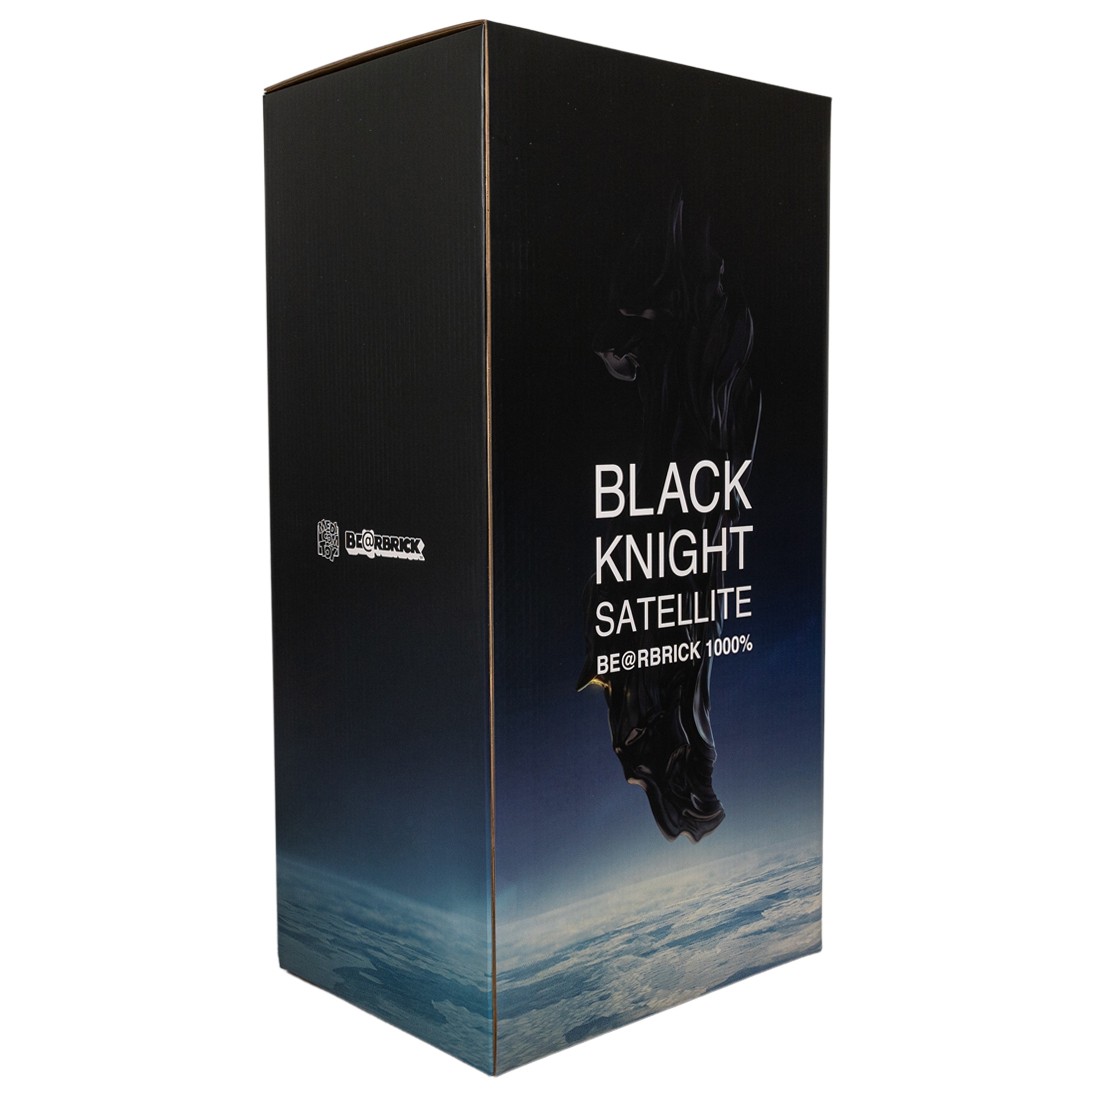 Medicom Black Knight Satellite 1000% Bearbrick Figure black